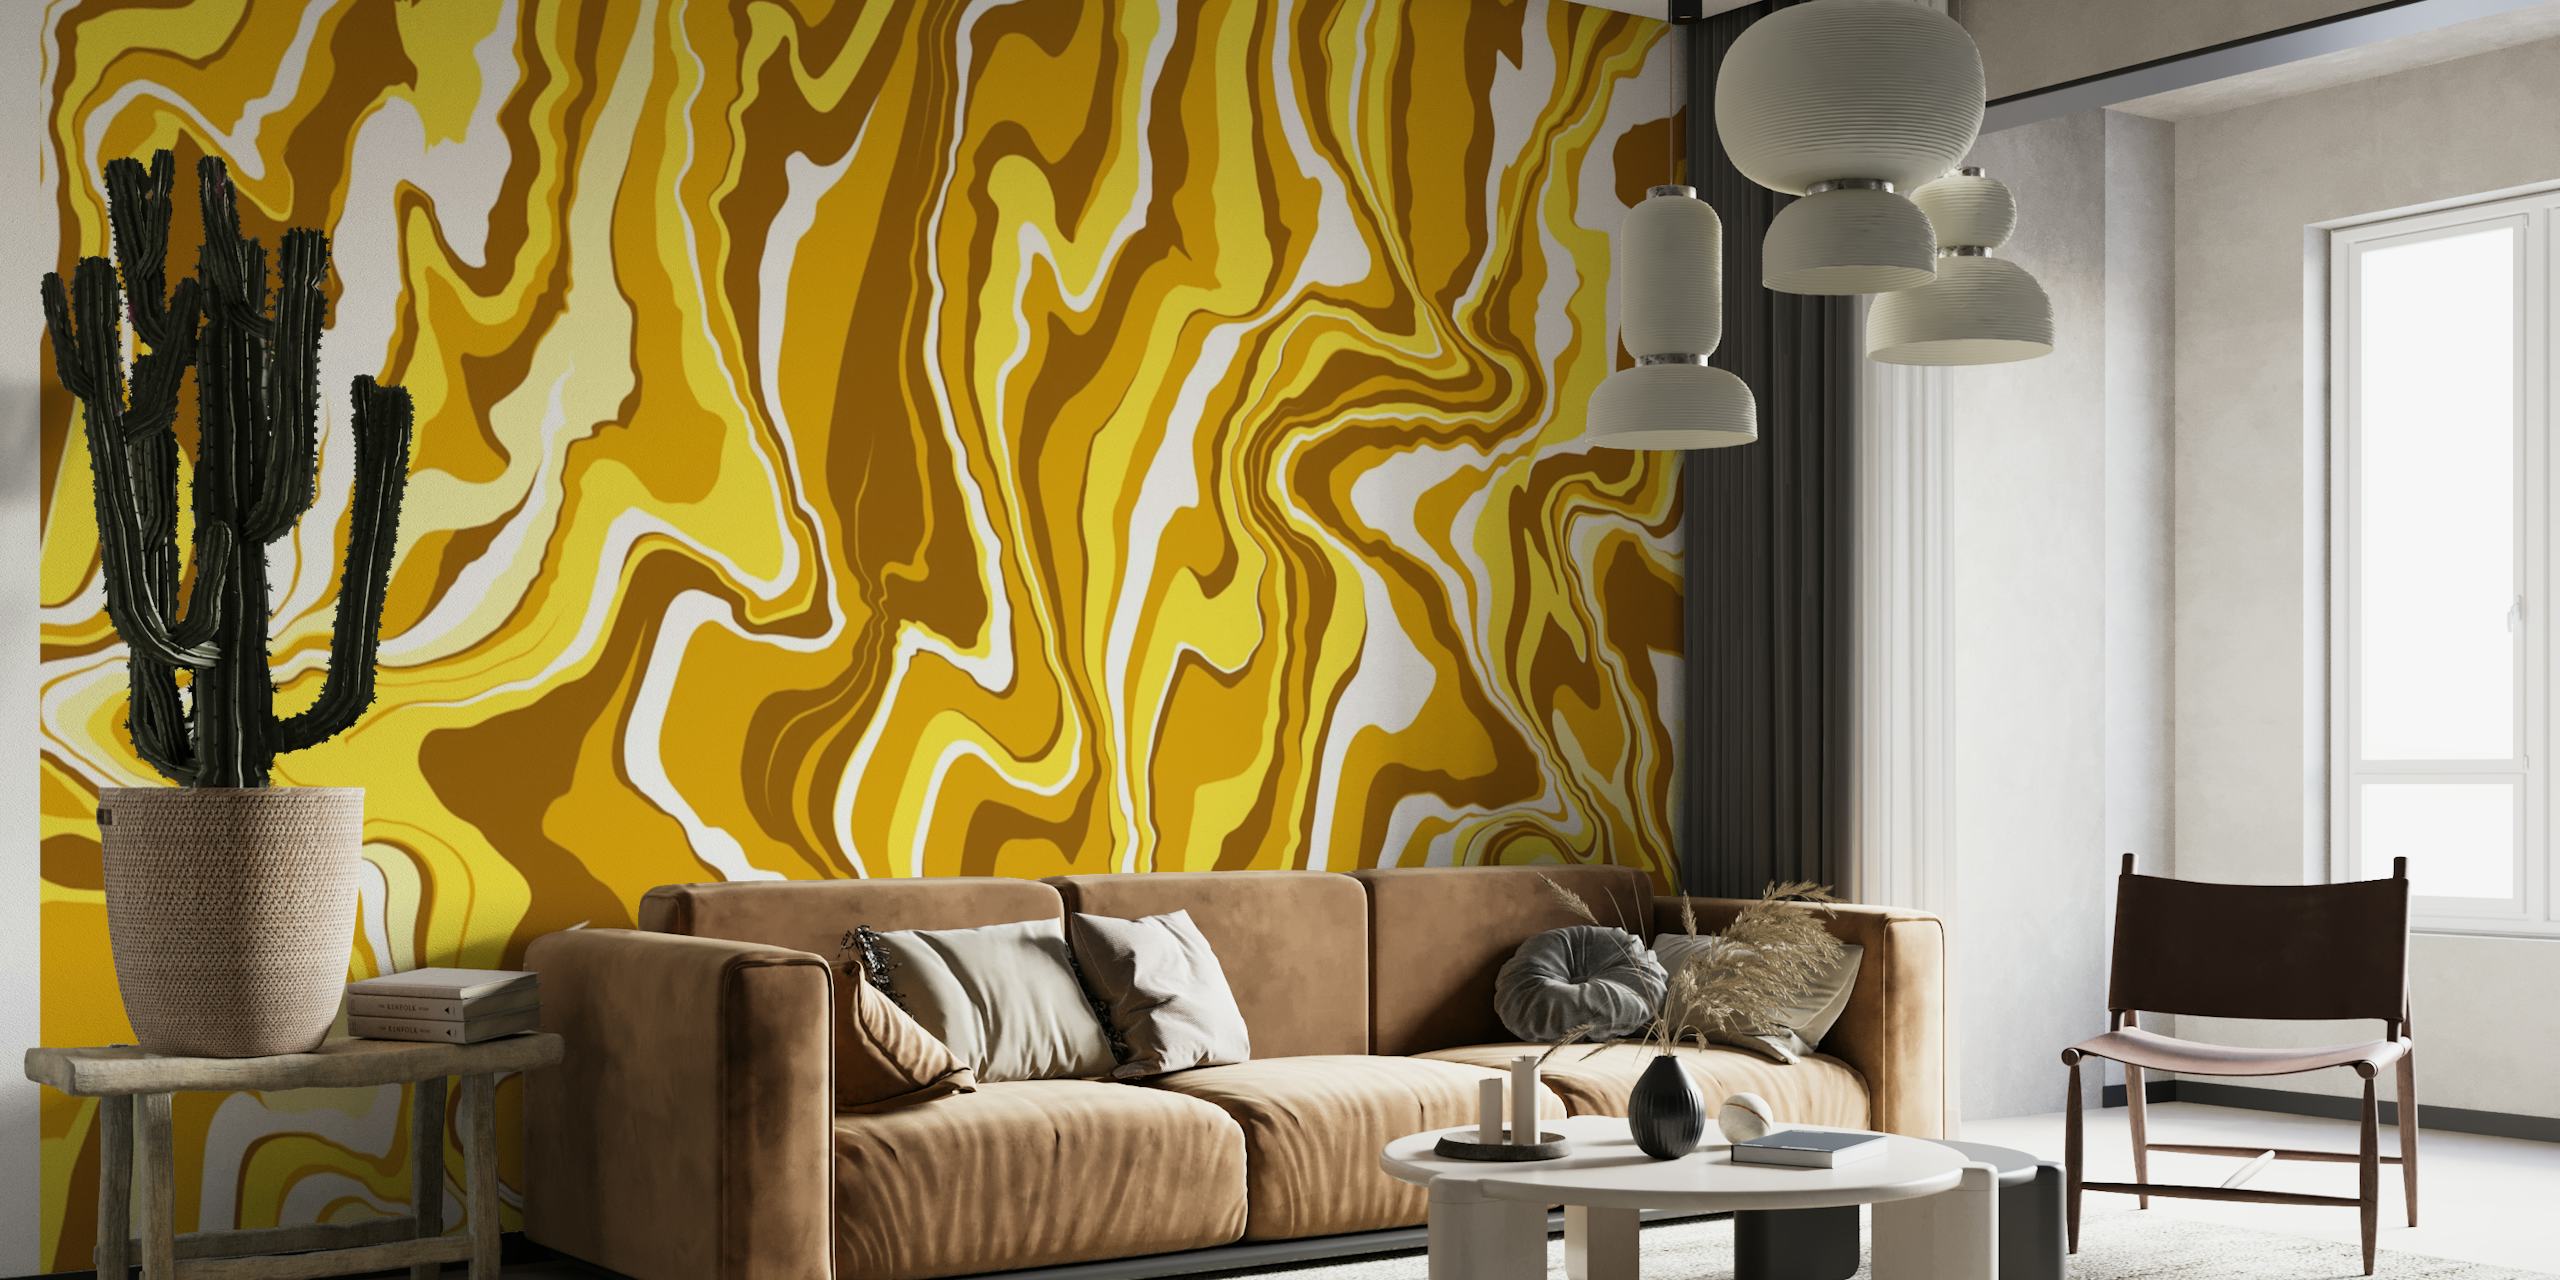 Fluid Art 4 zidna slika sa zlatnim vrtlozima i tekućim apstraktnim dizajnom